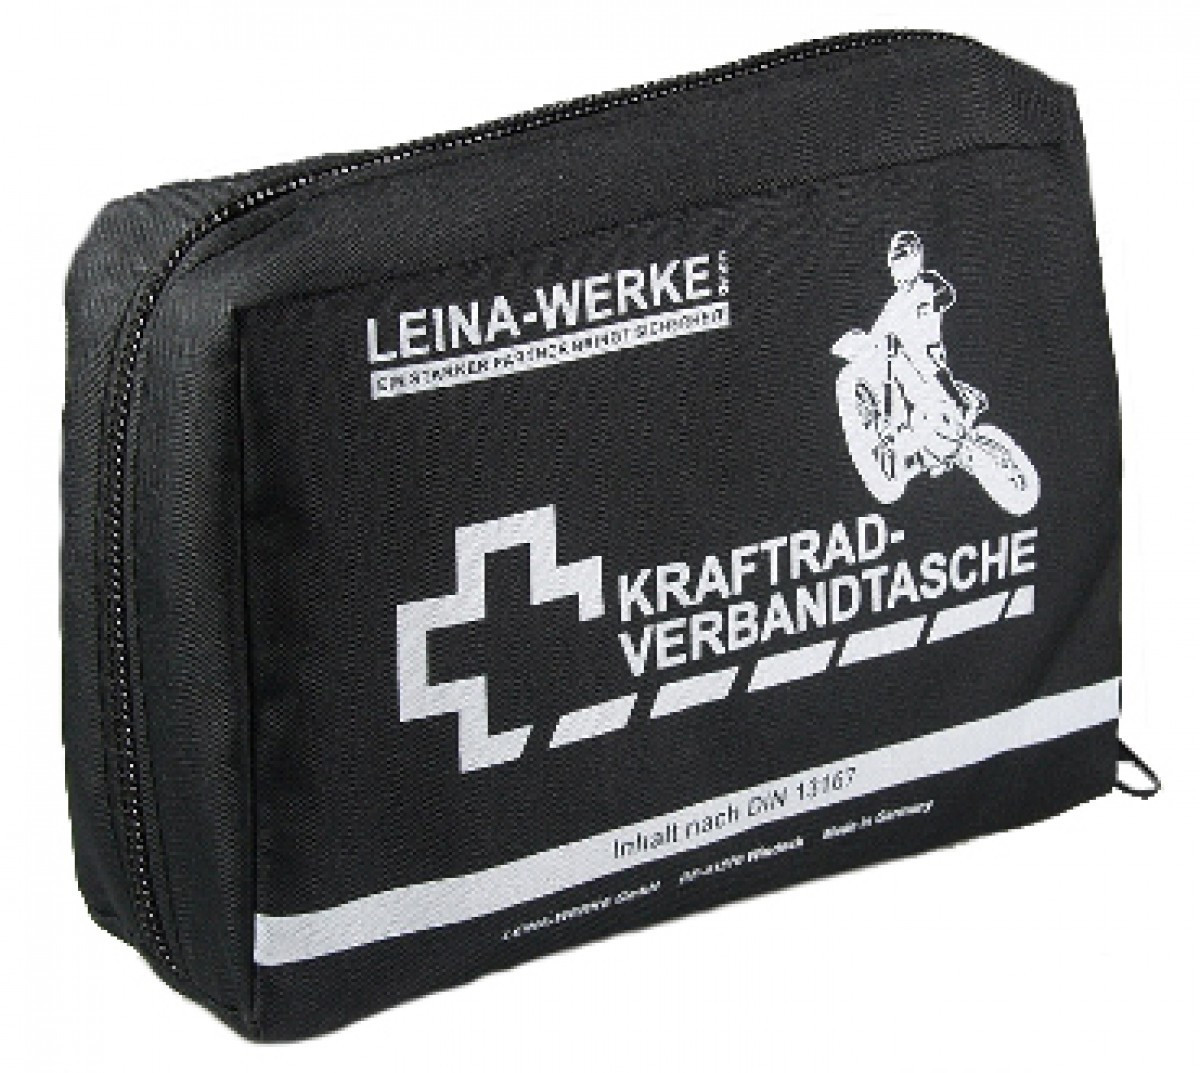 Leina Verbandtasche für Motorrad, Kraftrad-Verbandtasche REF 17002,DIN  13167 : : Auto & Motorrad